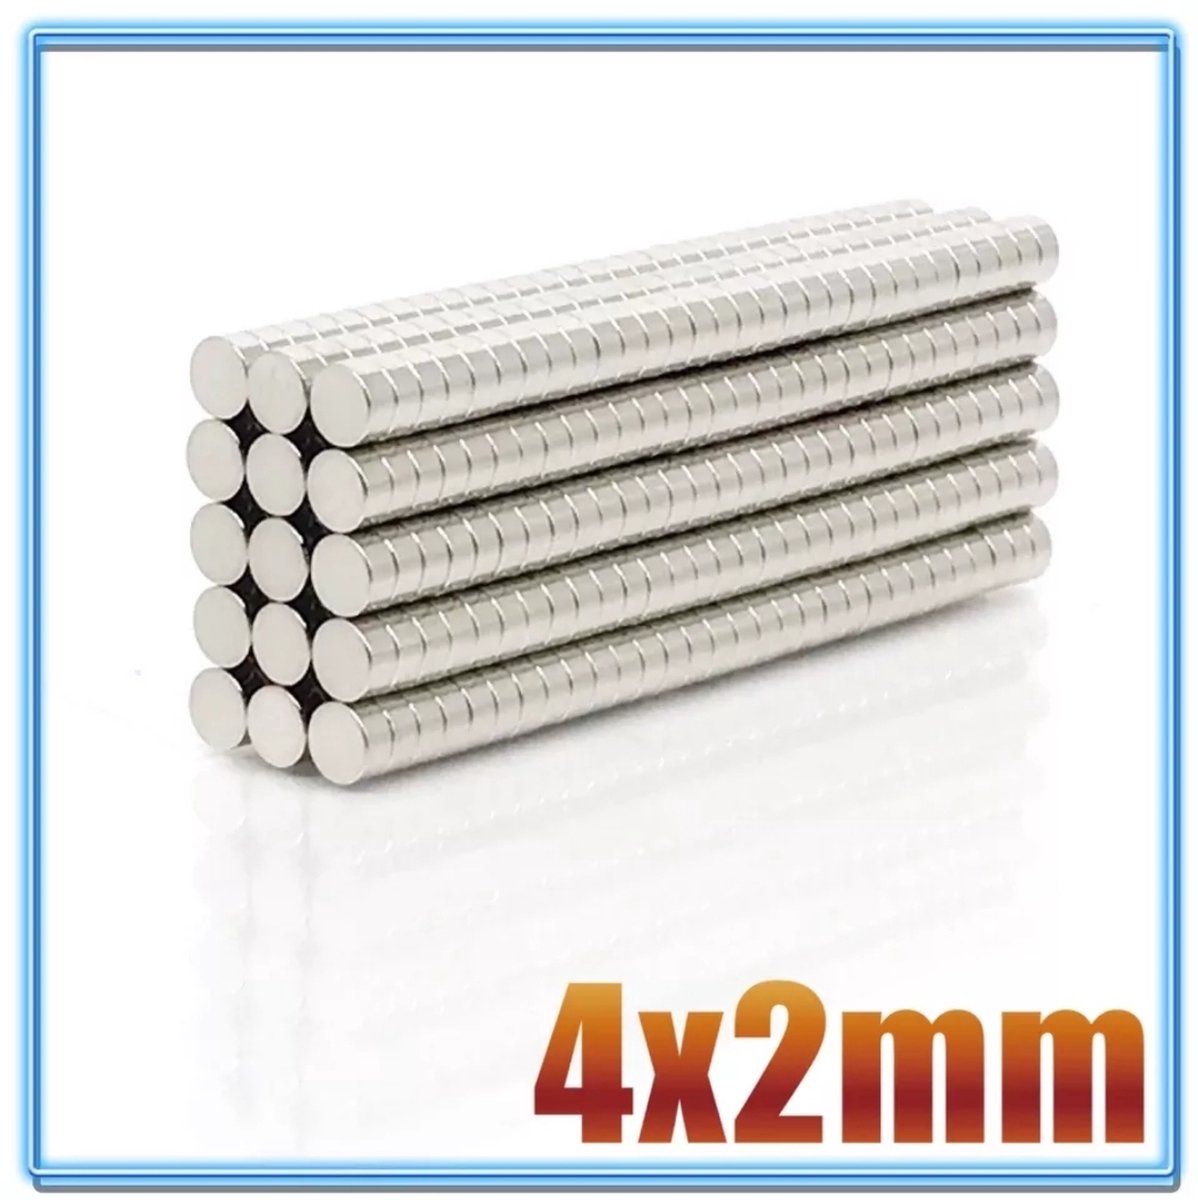 Ronde platte neodymium mini magneetjes 150 stuks - 4 x 2 mm - neodymium magneet - koelkast - whiteboard